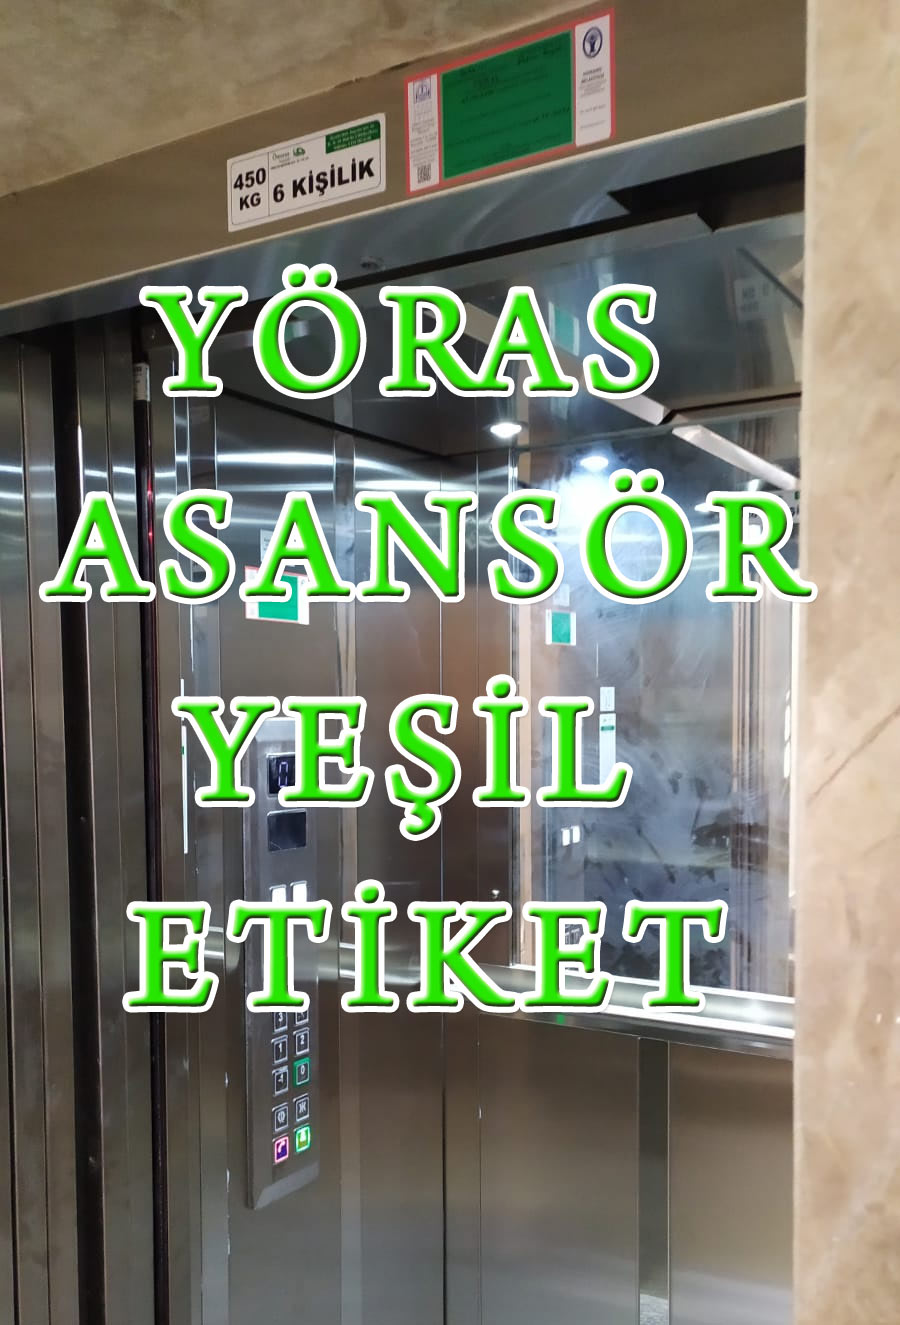 Bursa'da asansör yeşil etiket